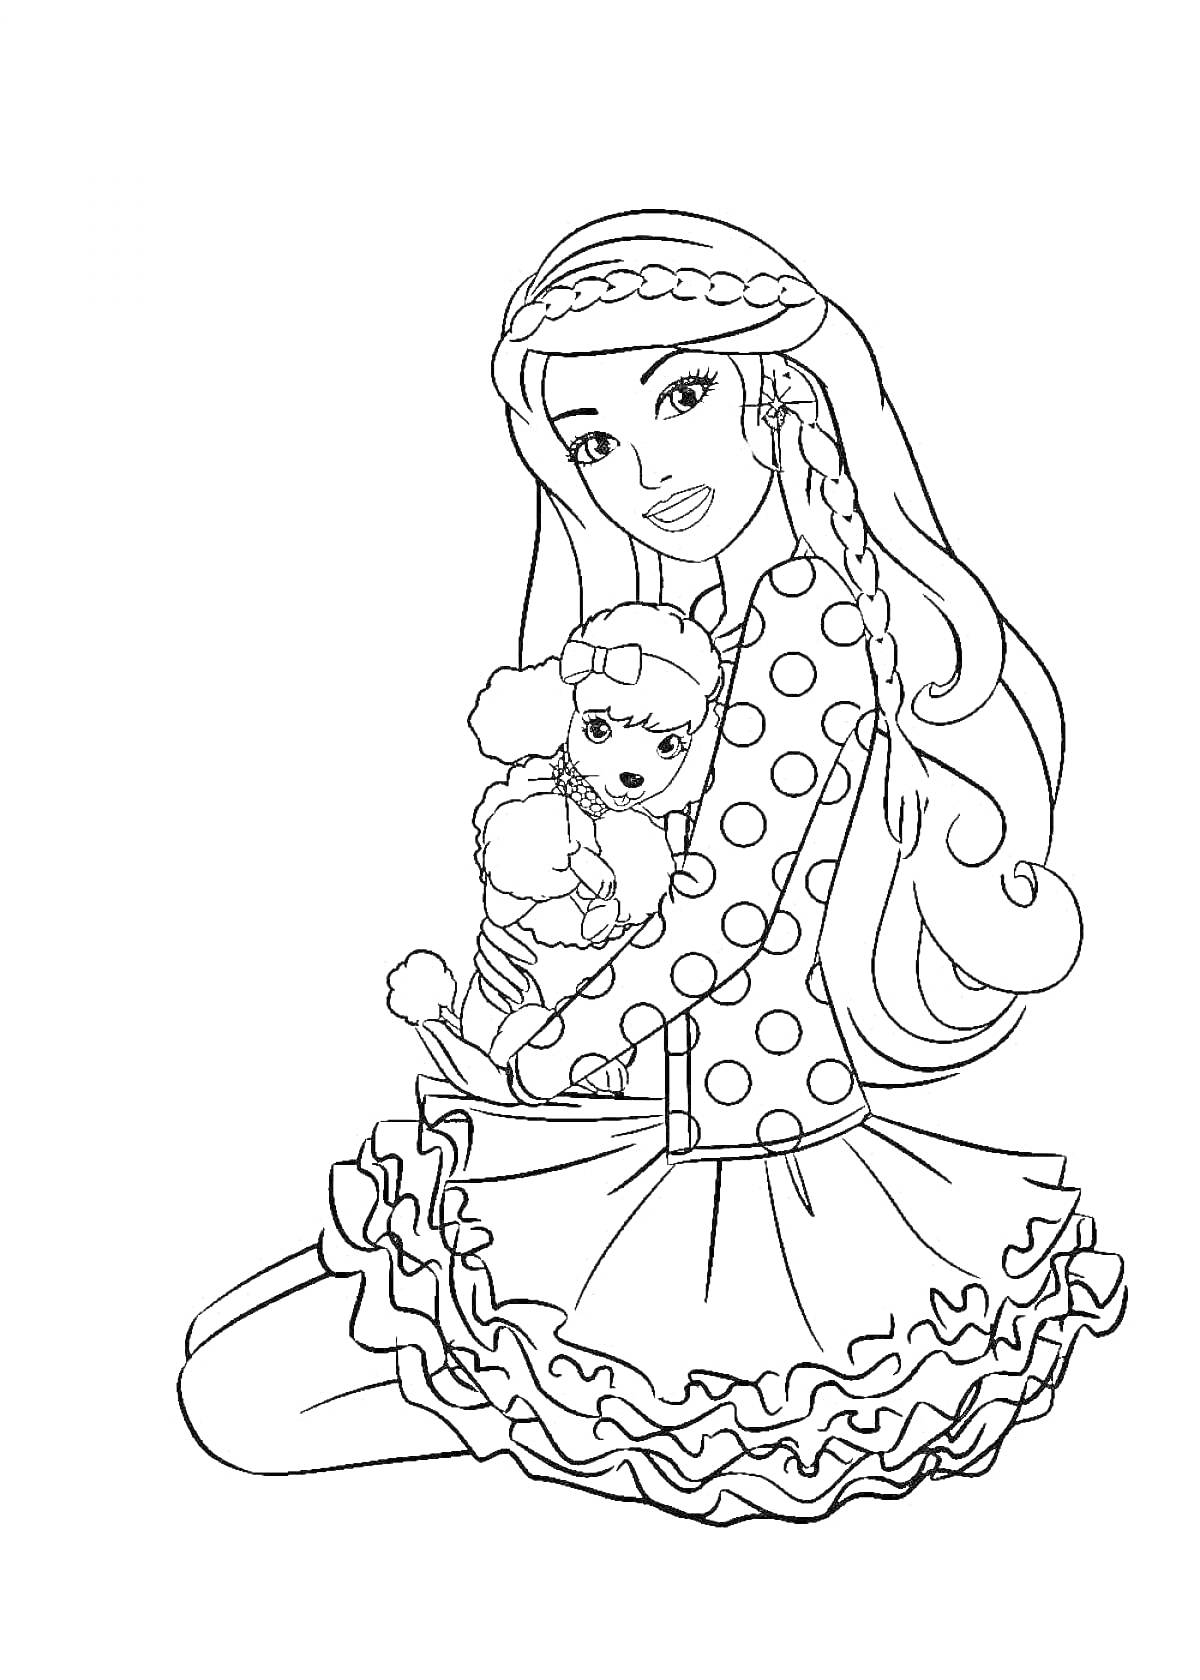 Раскраска Барби в платье с рюшами и собачка